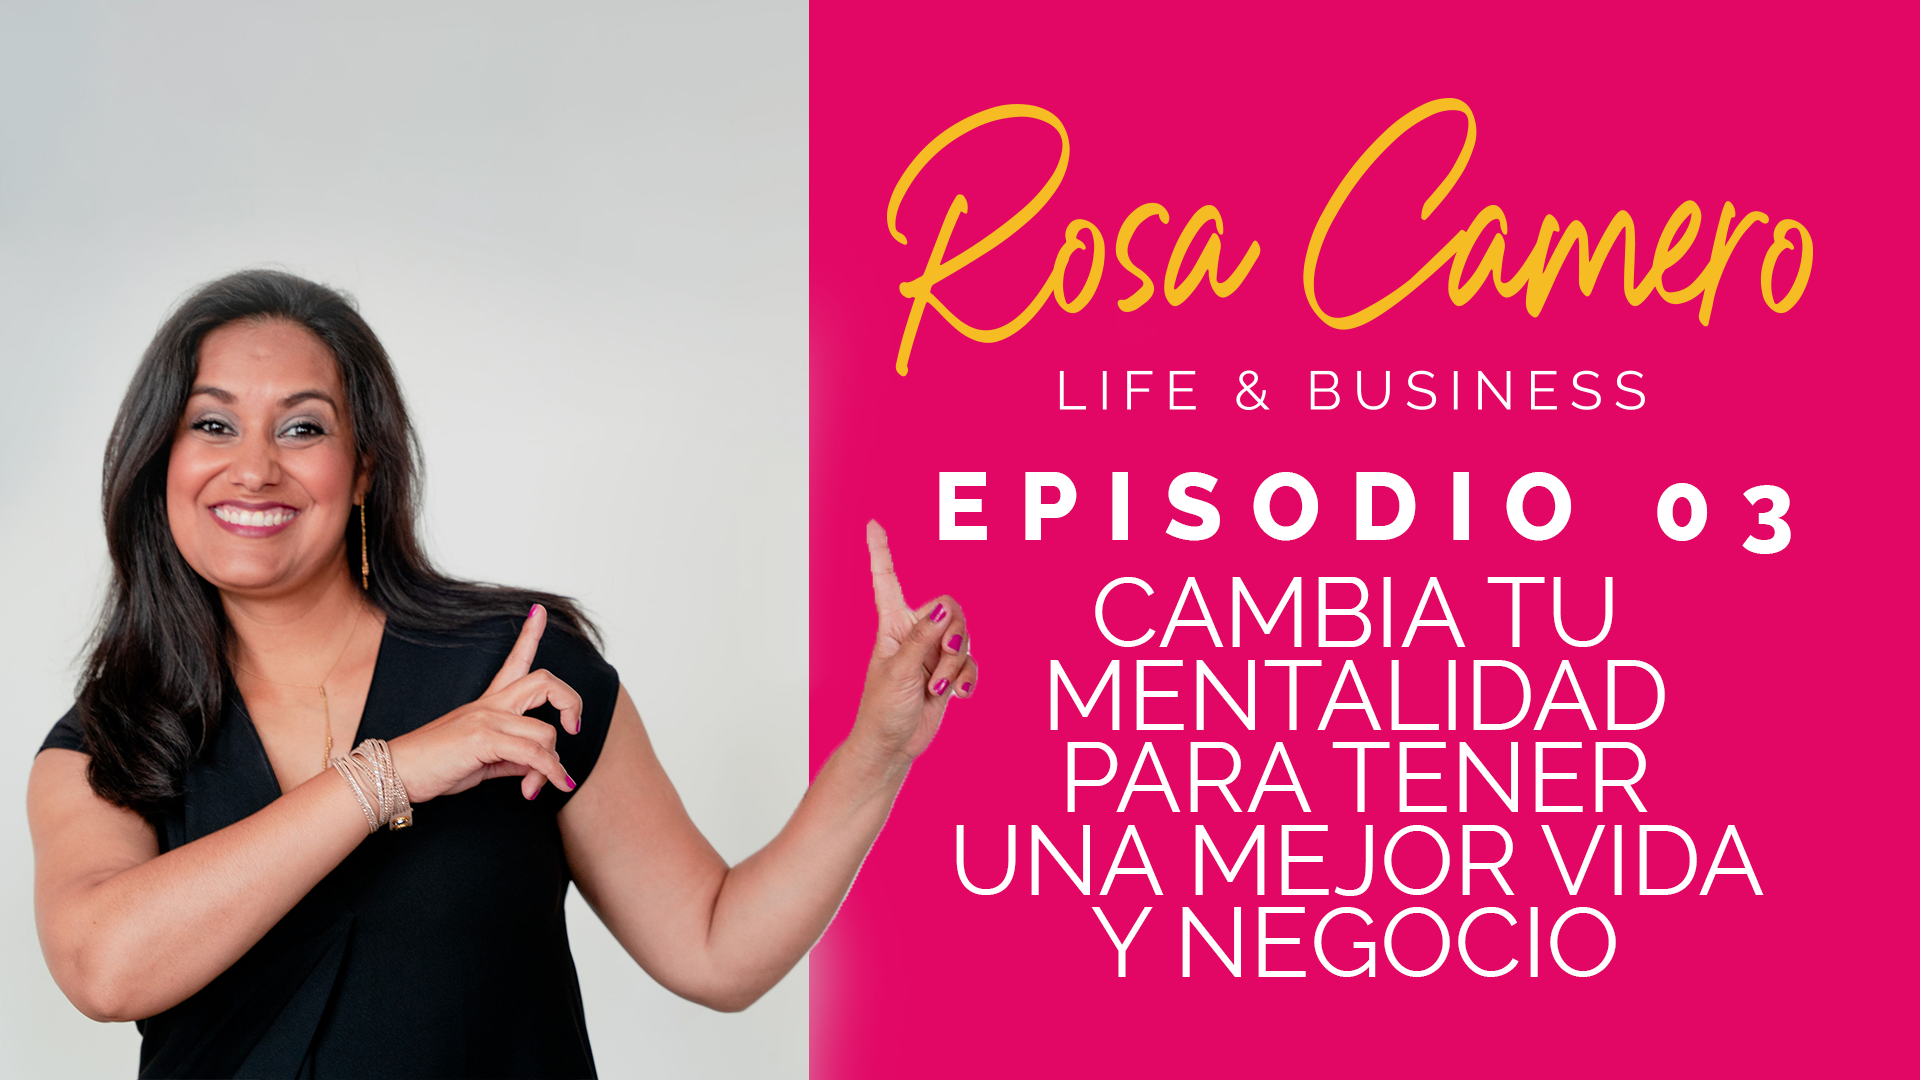 You are currently viewing Life & Busines con Rosa Camero Episodio 03: Cambia Tu Mentalidad Para Tener Una Mejor Vida Y Negocio